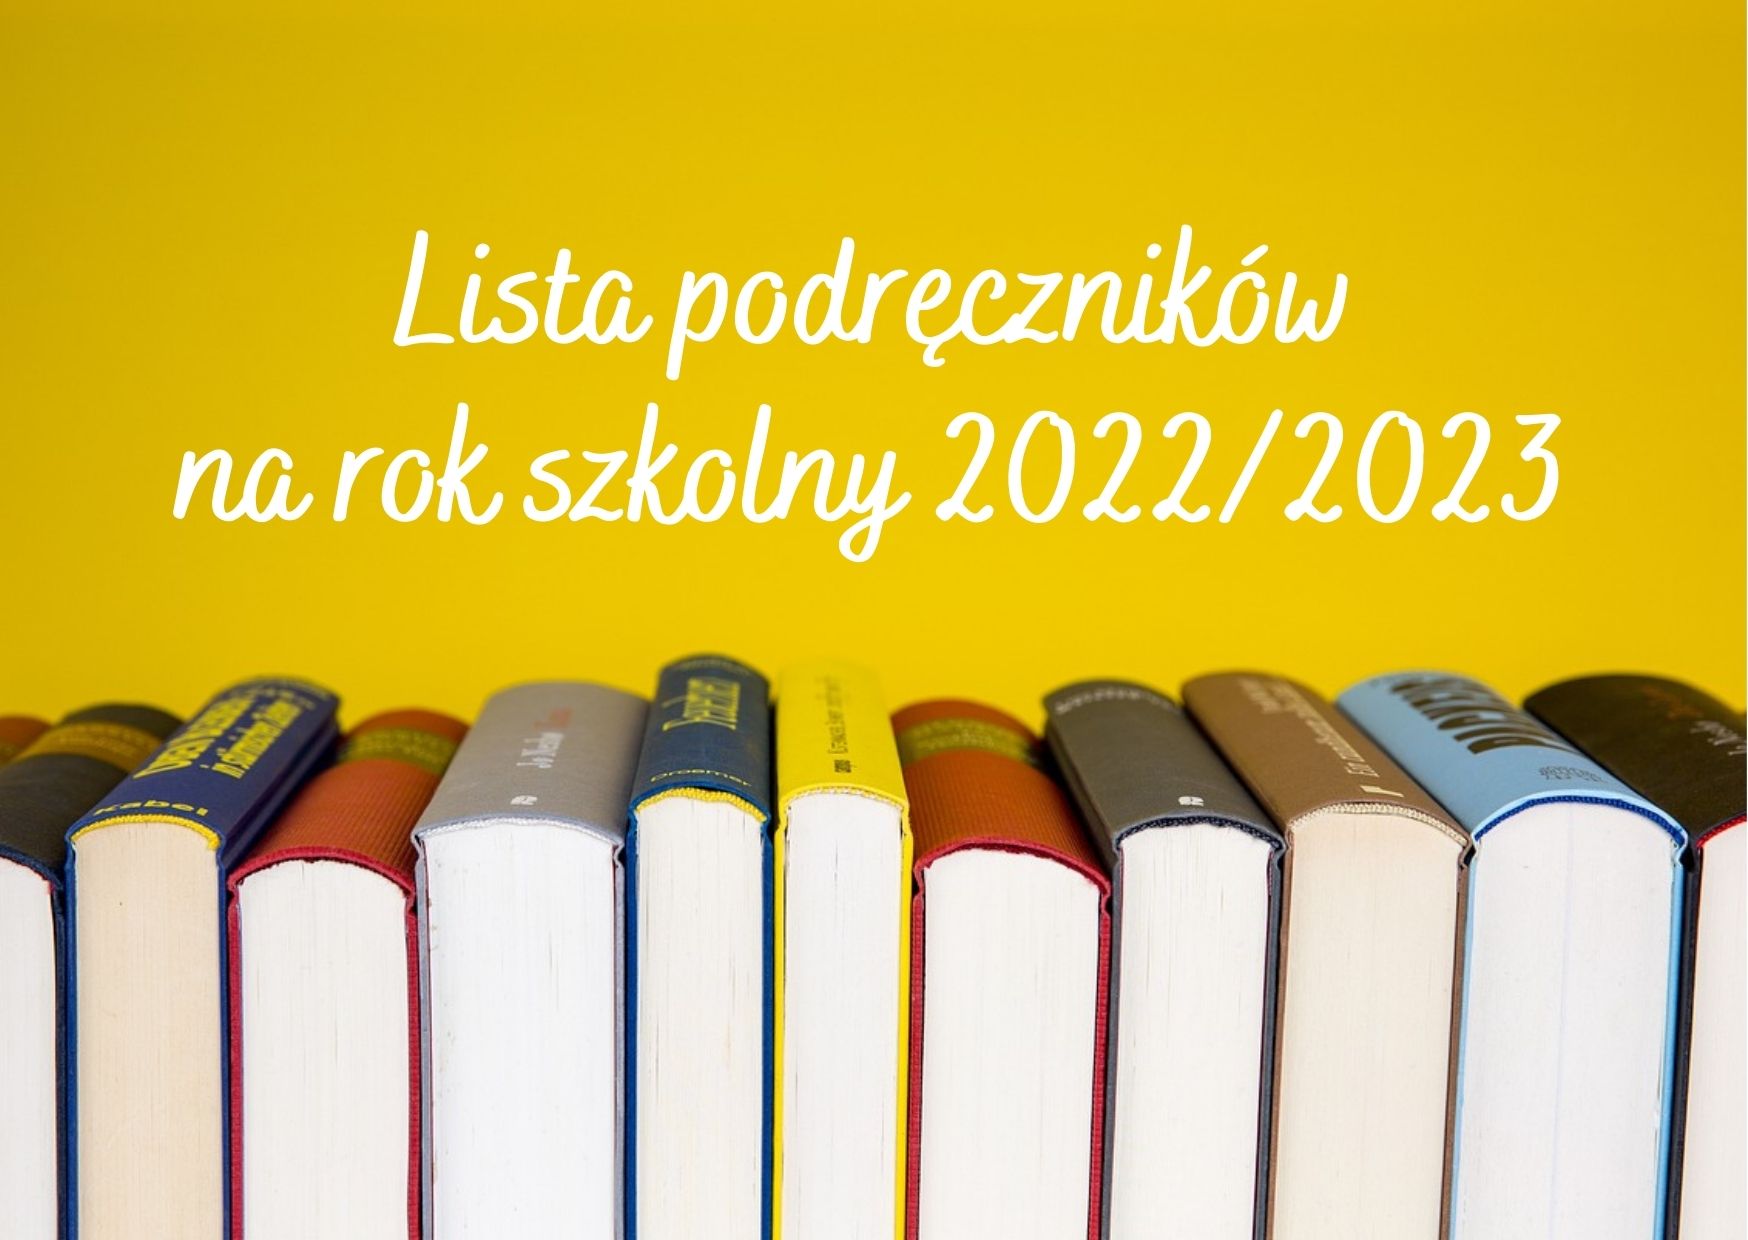 Podręczniki 2020/21